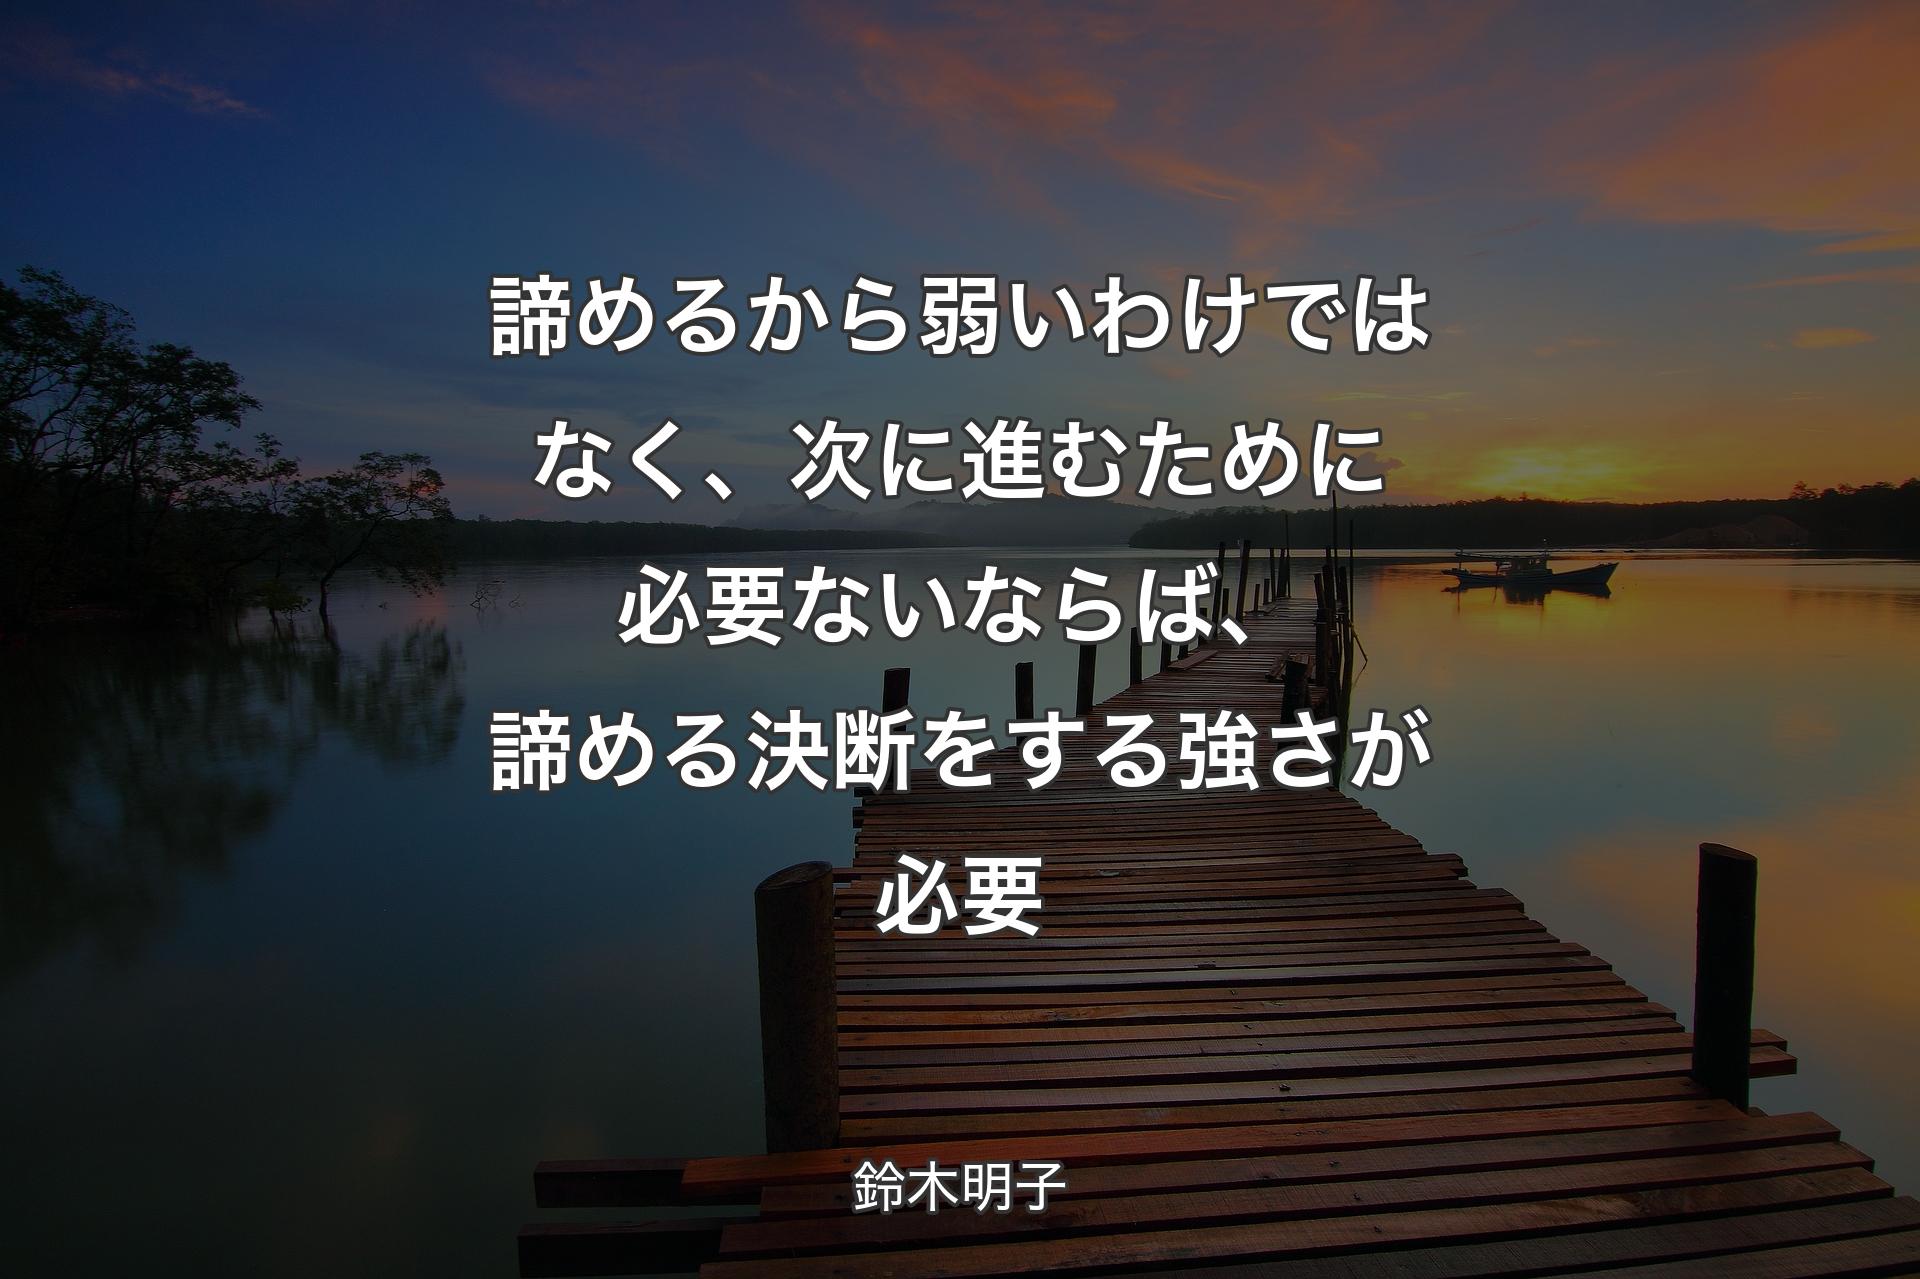 諦めるから弱いわけではなく、次に進むために必要ないならば、諦める決断をする強さが必要 - 鈴木明子